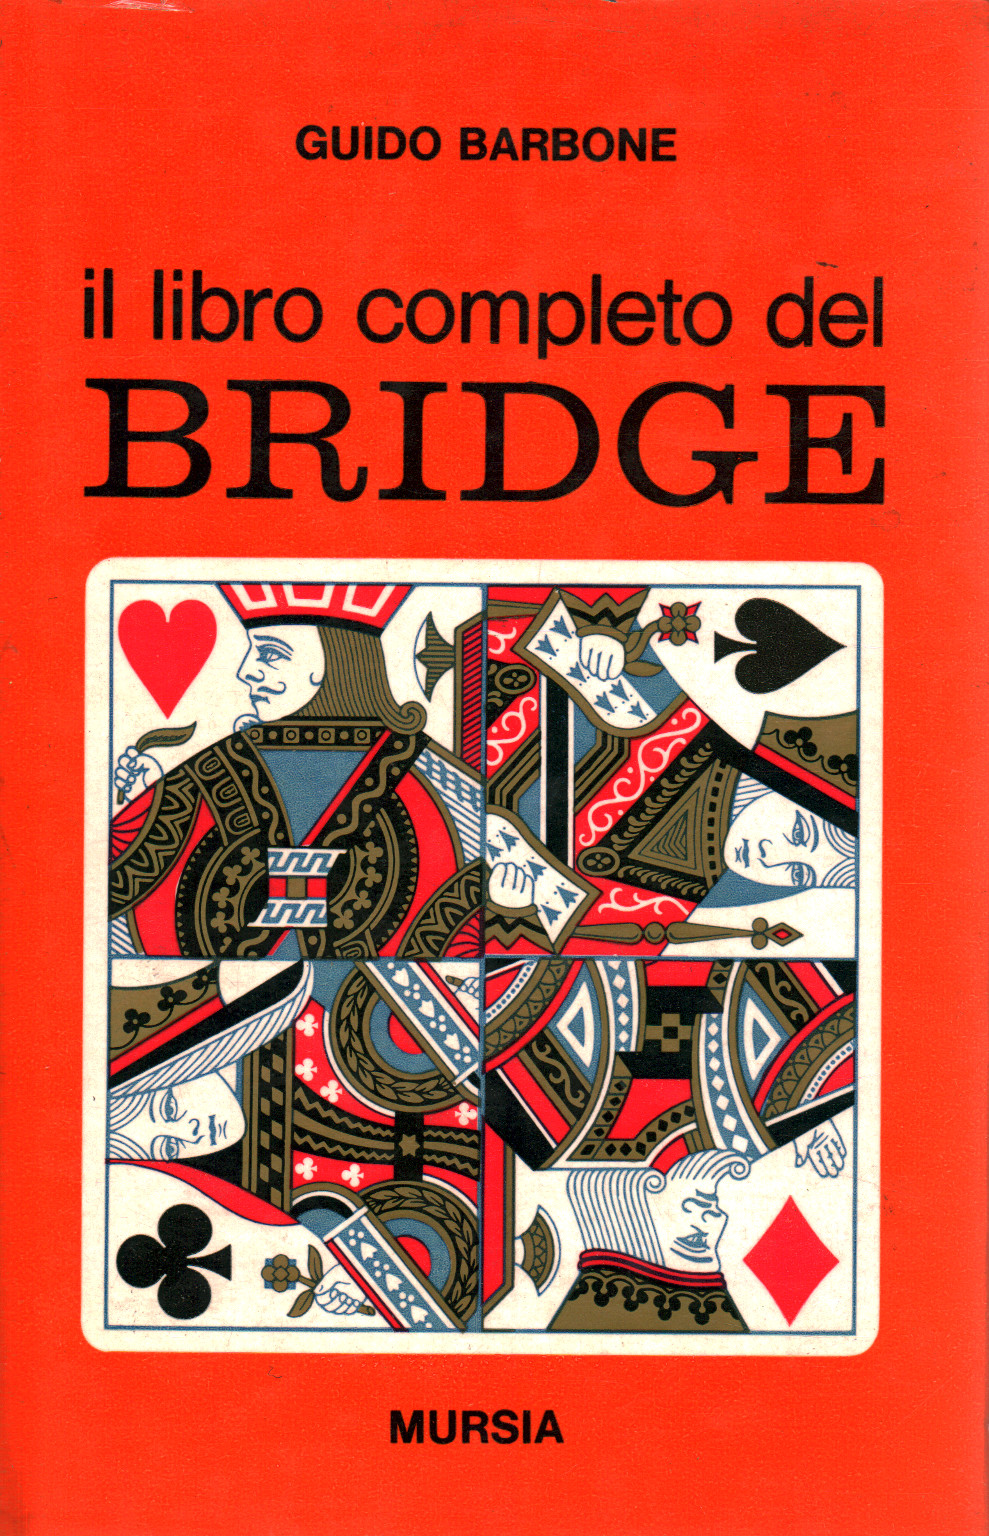 Il libro completo del bridge, s.a.